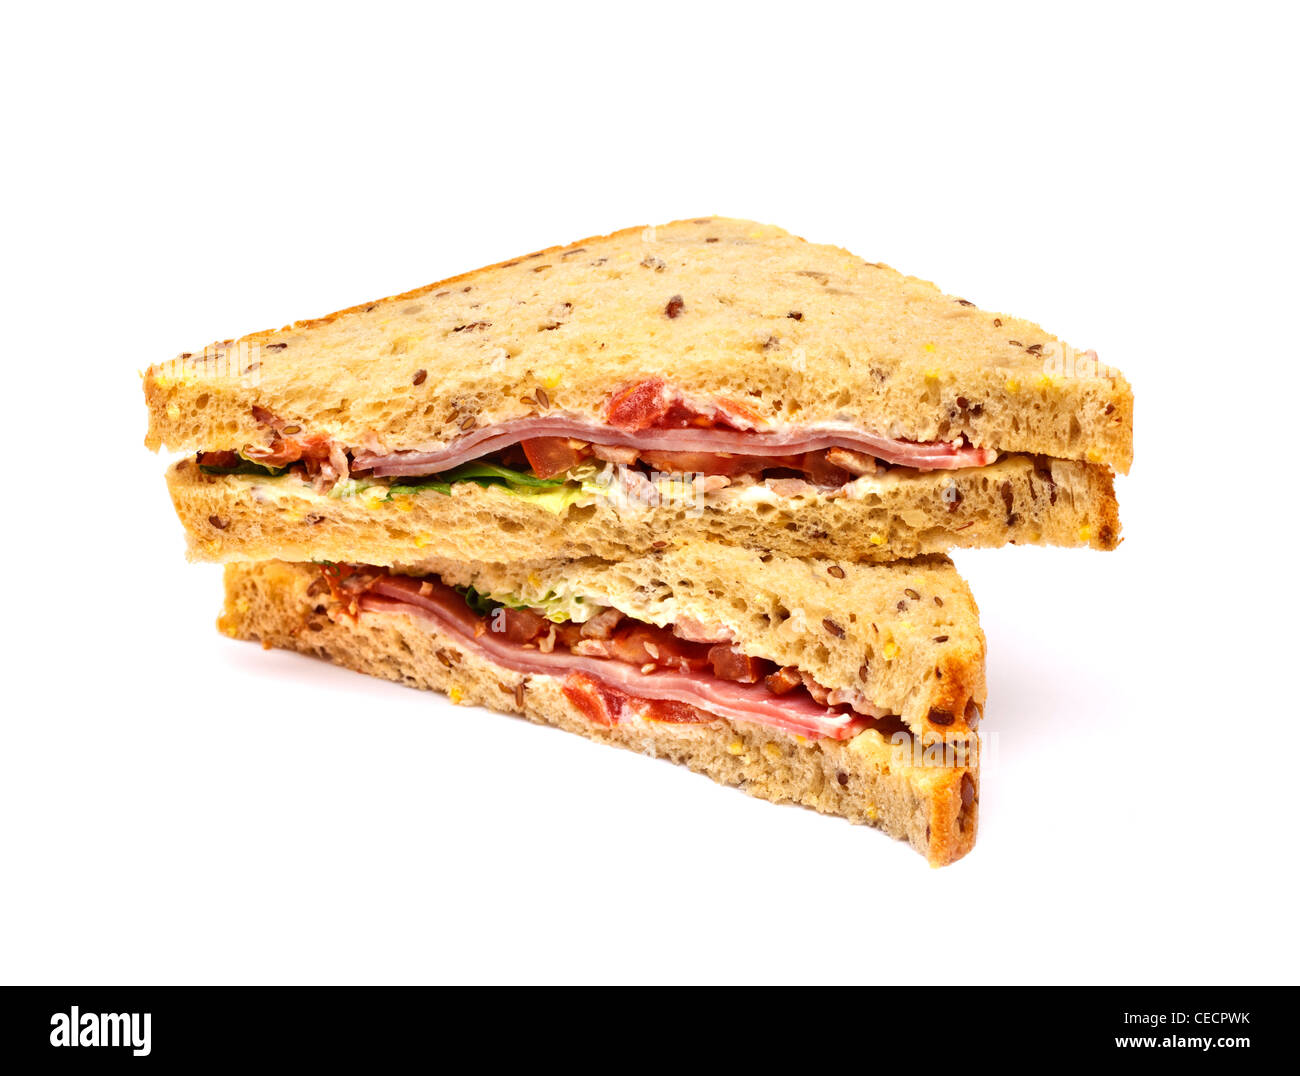 BLT - bacon, laitue et tomate sandwich sur fond blanc Banque D'Images